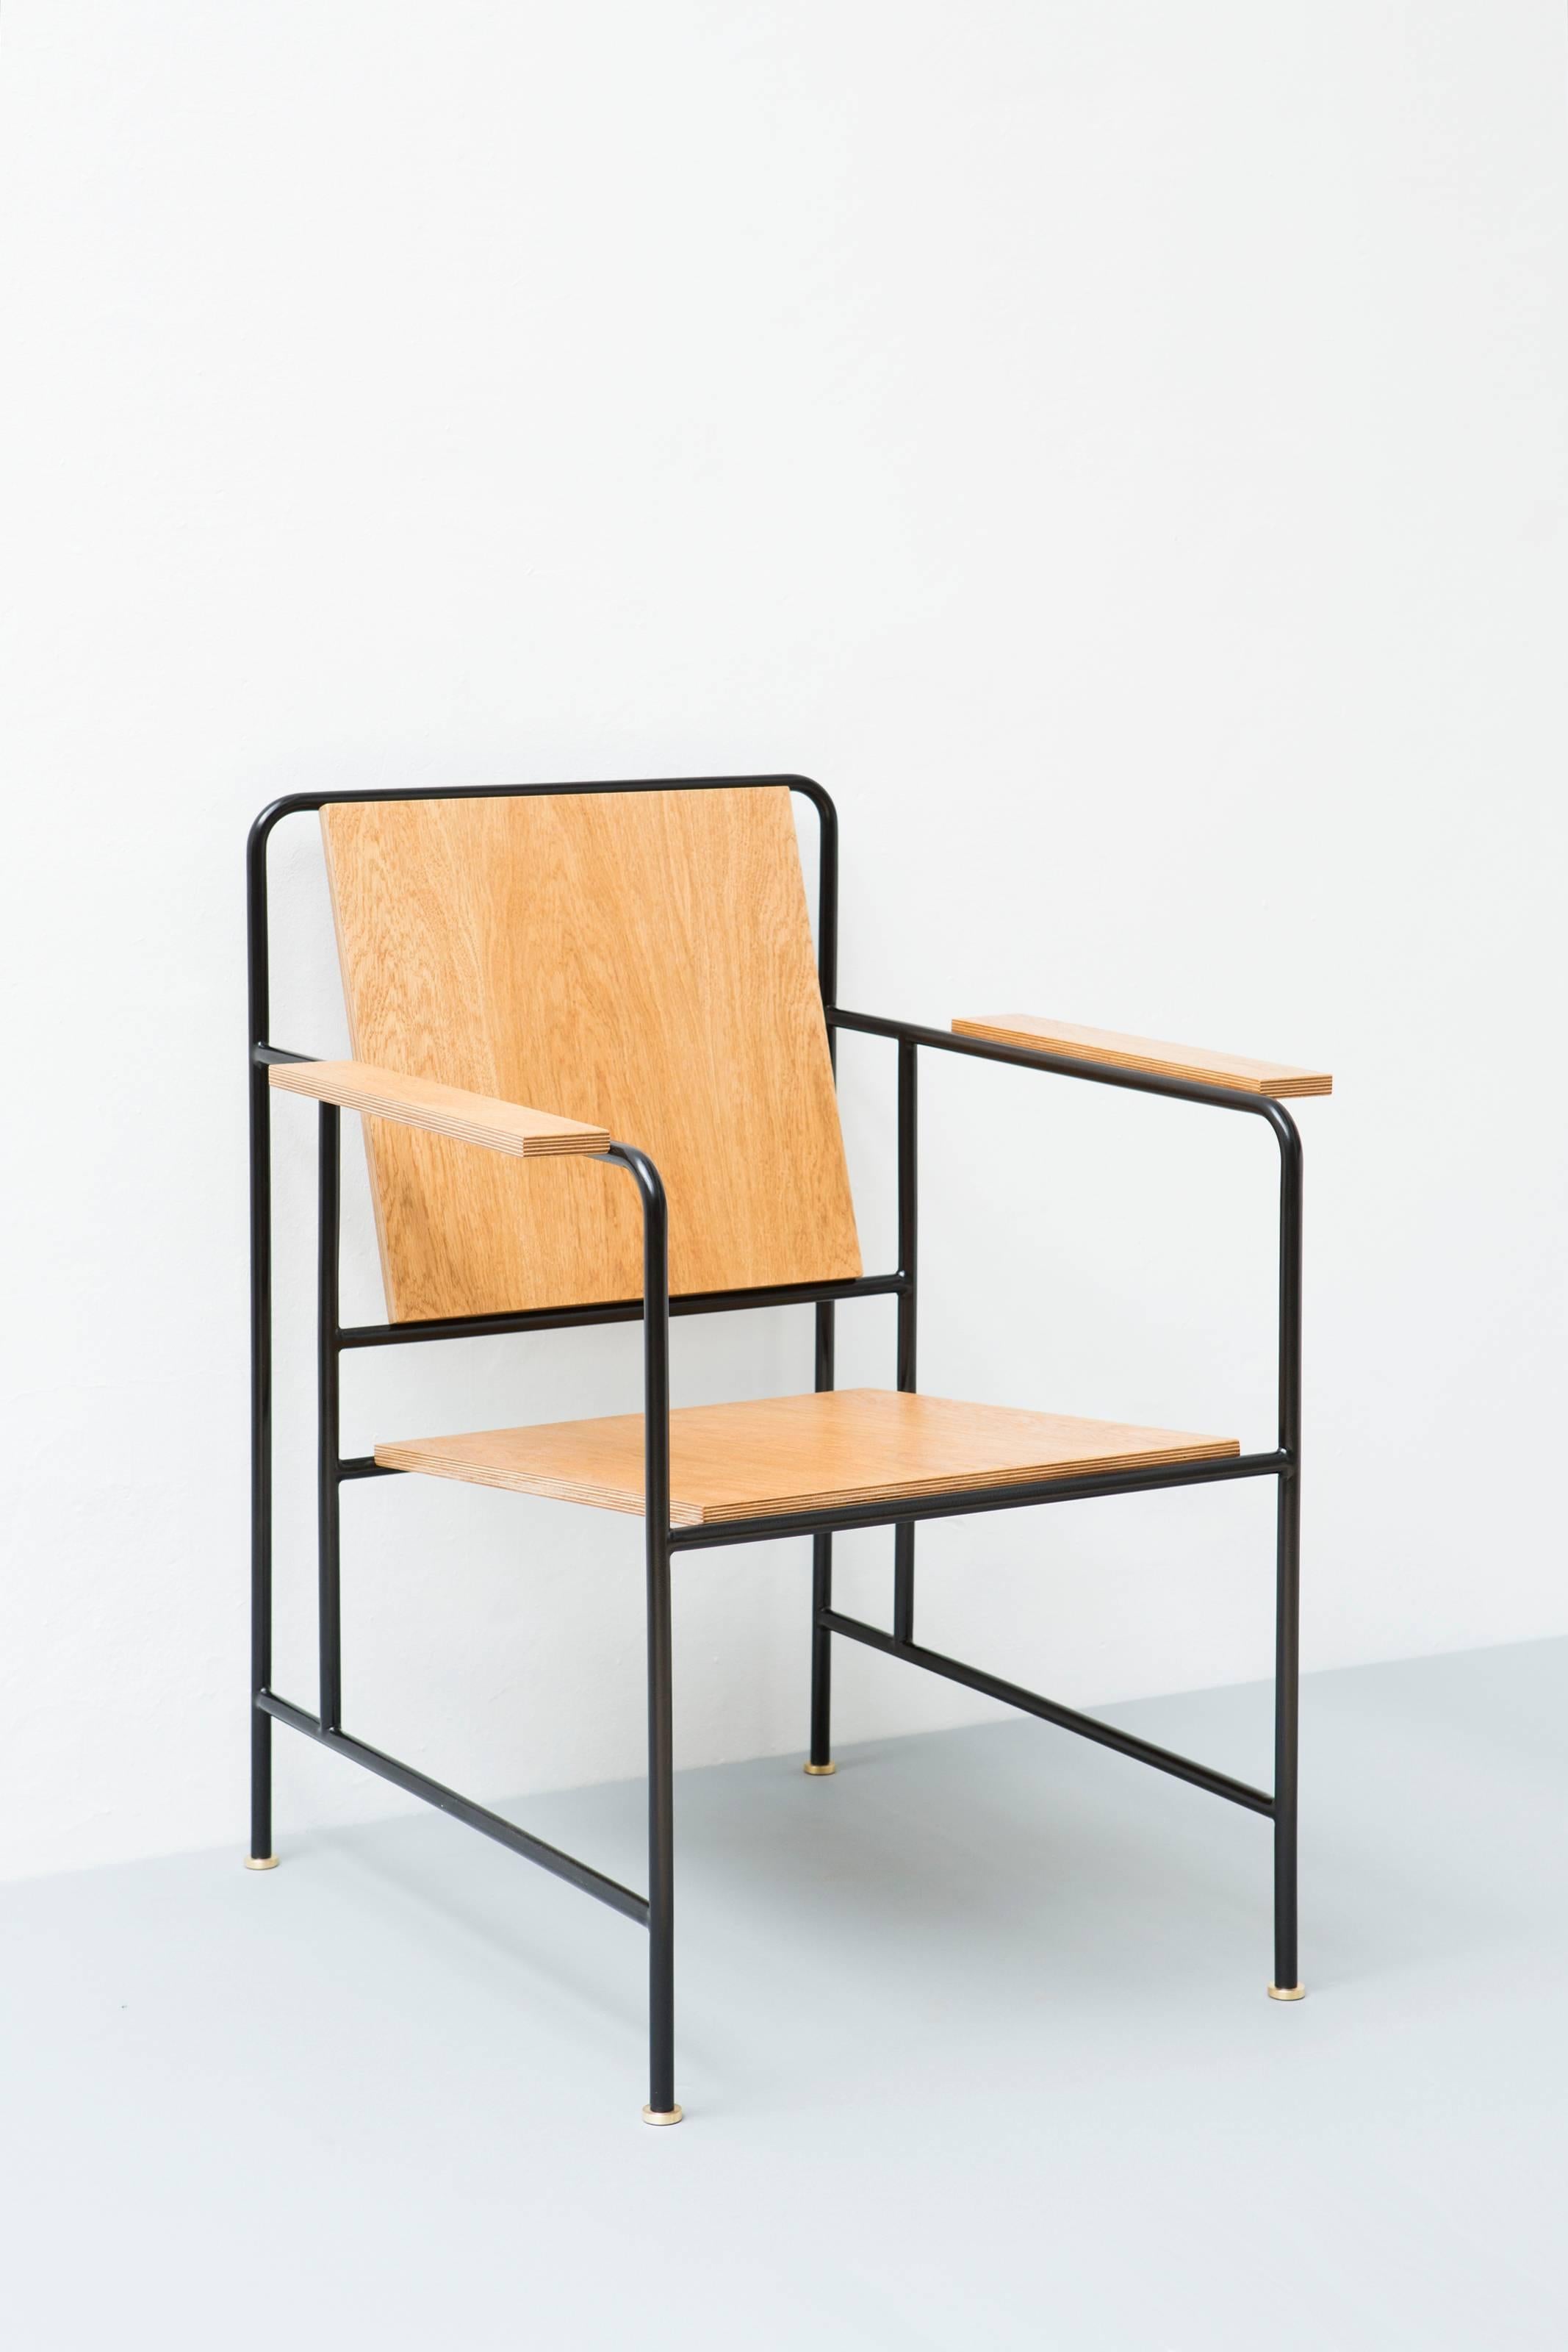 Sessel des russischen Designers Dmitry Samygin
Eichenfurnier und Metallrohr

Maße: 86 cm x 65 cm x 65 cm
(34 x 25,5 x 25,5 Zoll).

 